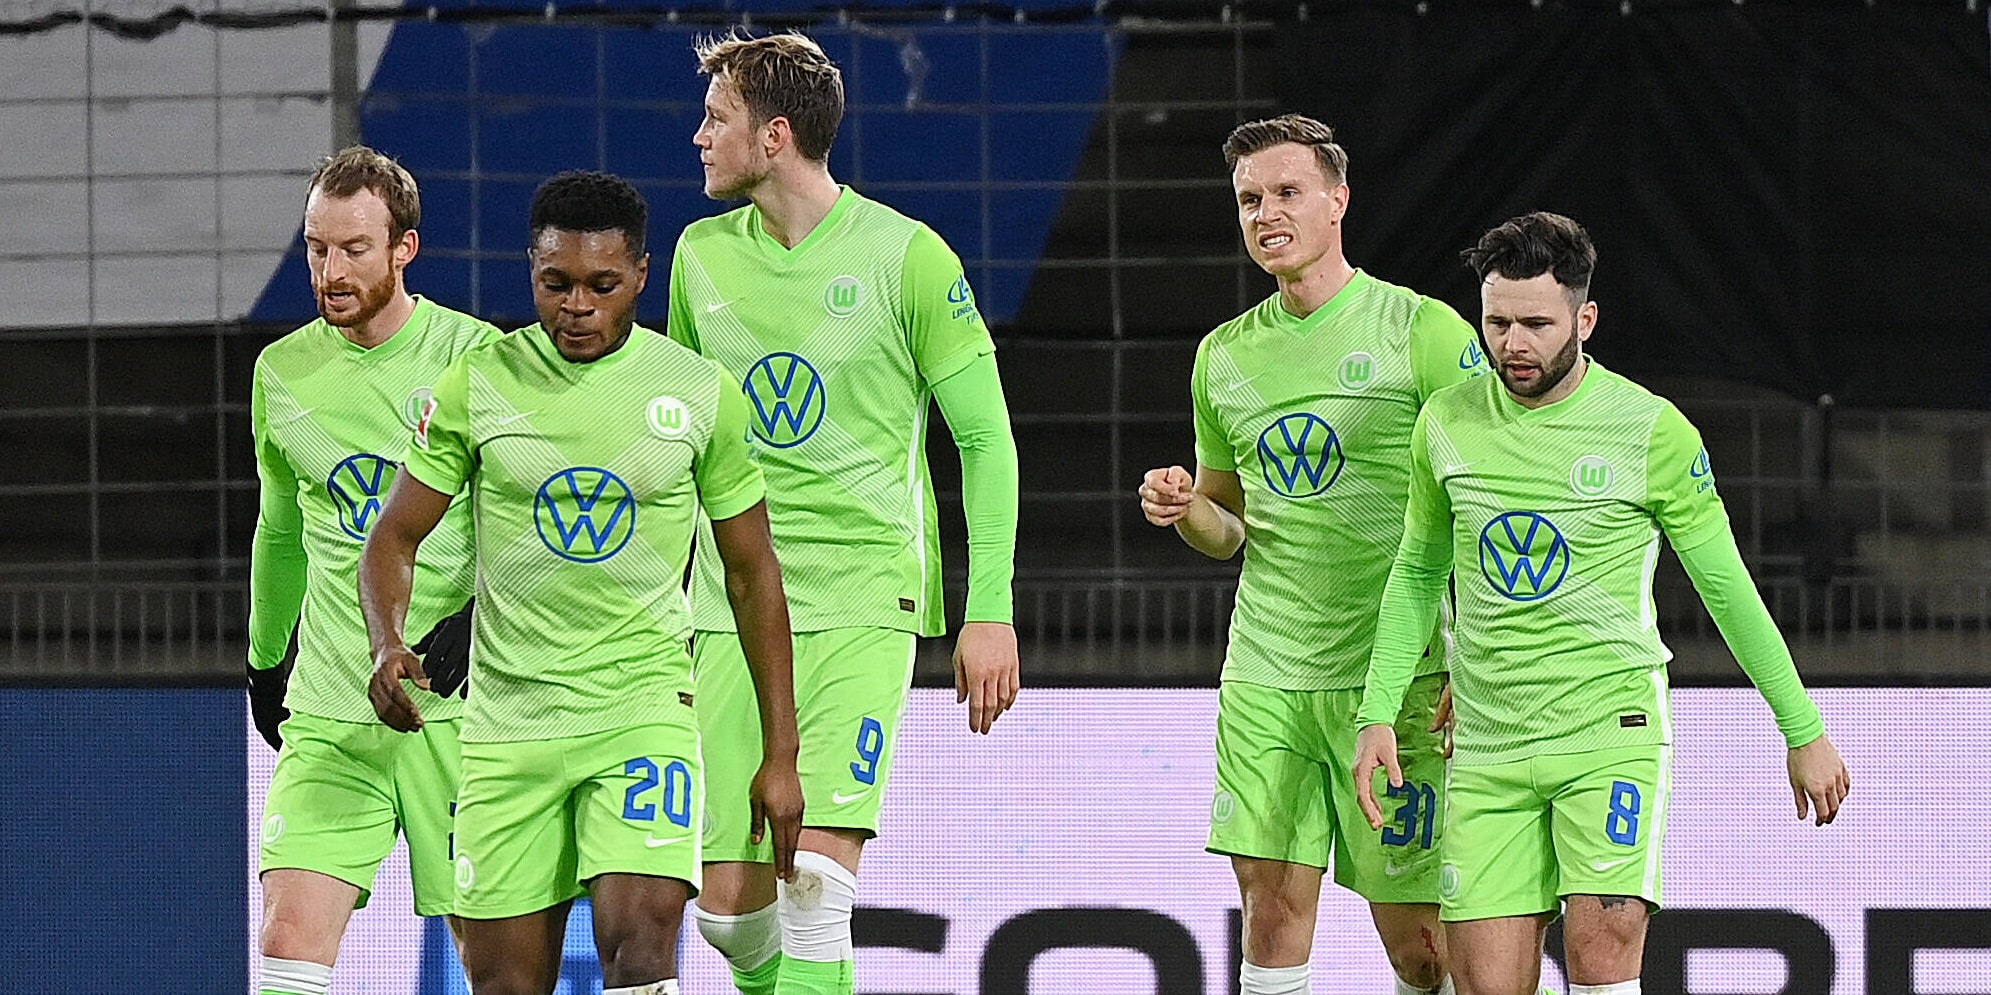 Vfl Wolfsburg: Spieler bei Comunio